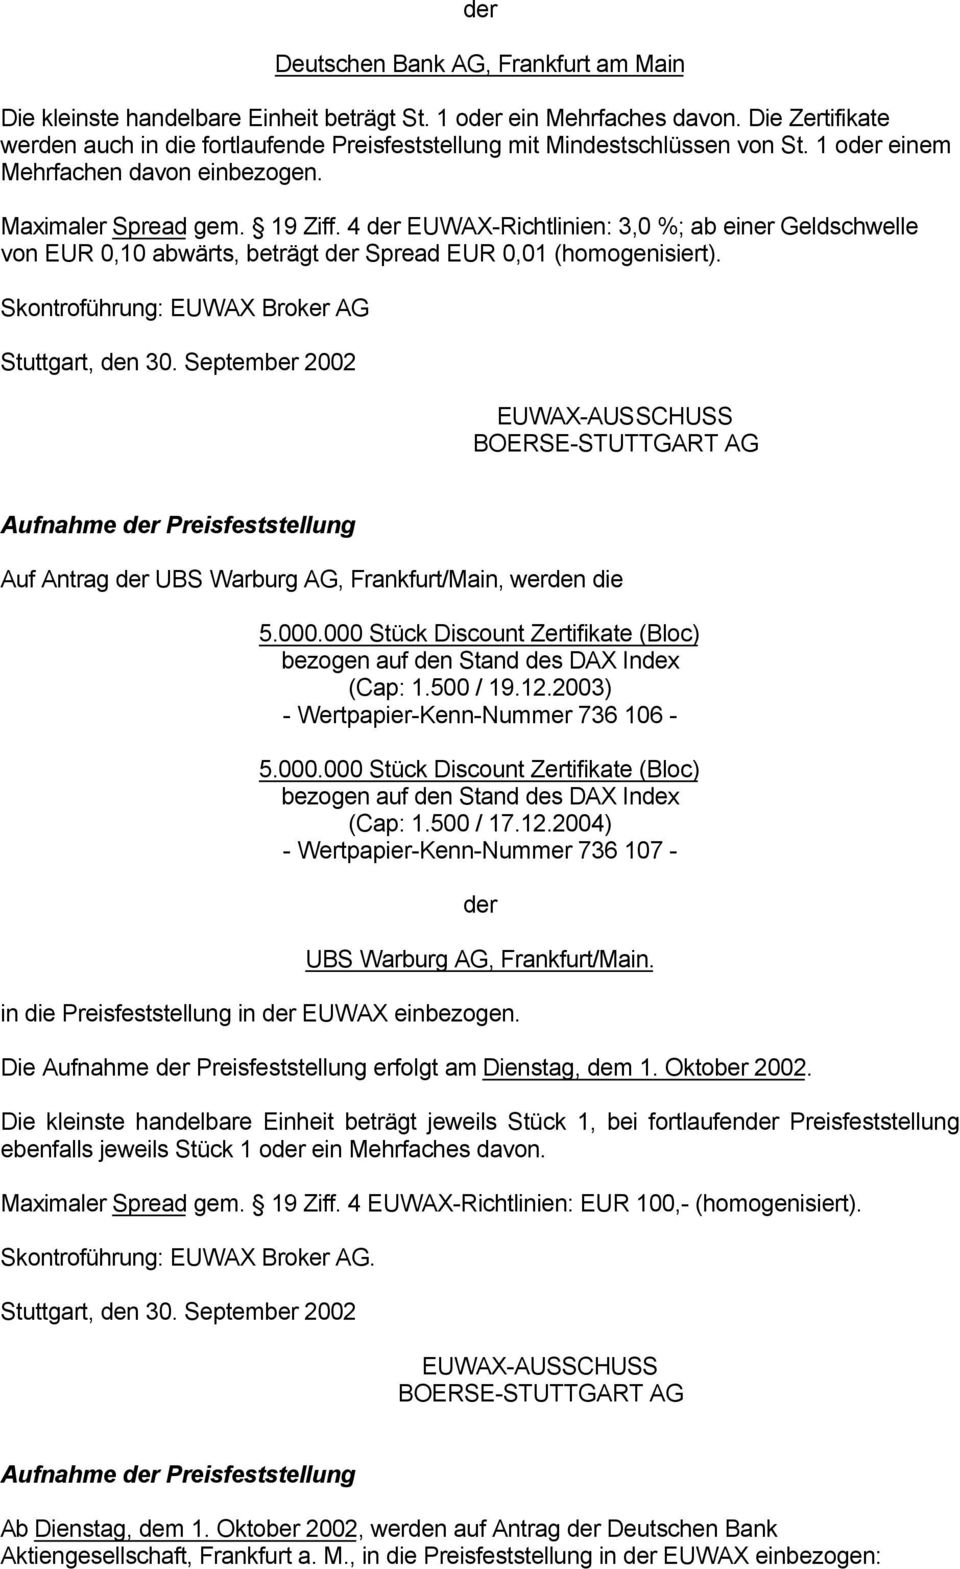 4 EUWAX-Richtlinien: 3,0 %; ab einer Geldschwelle von EUR 0,10 abwärts, beträgt Spread EUR 0,01 (homogenisiert).